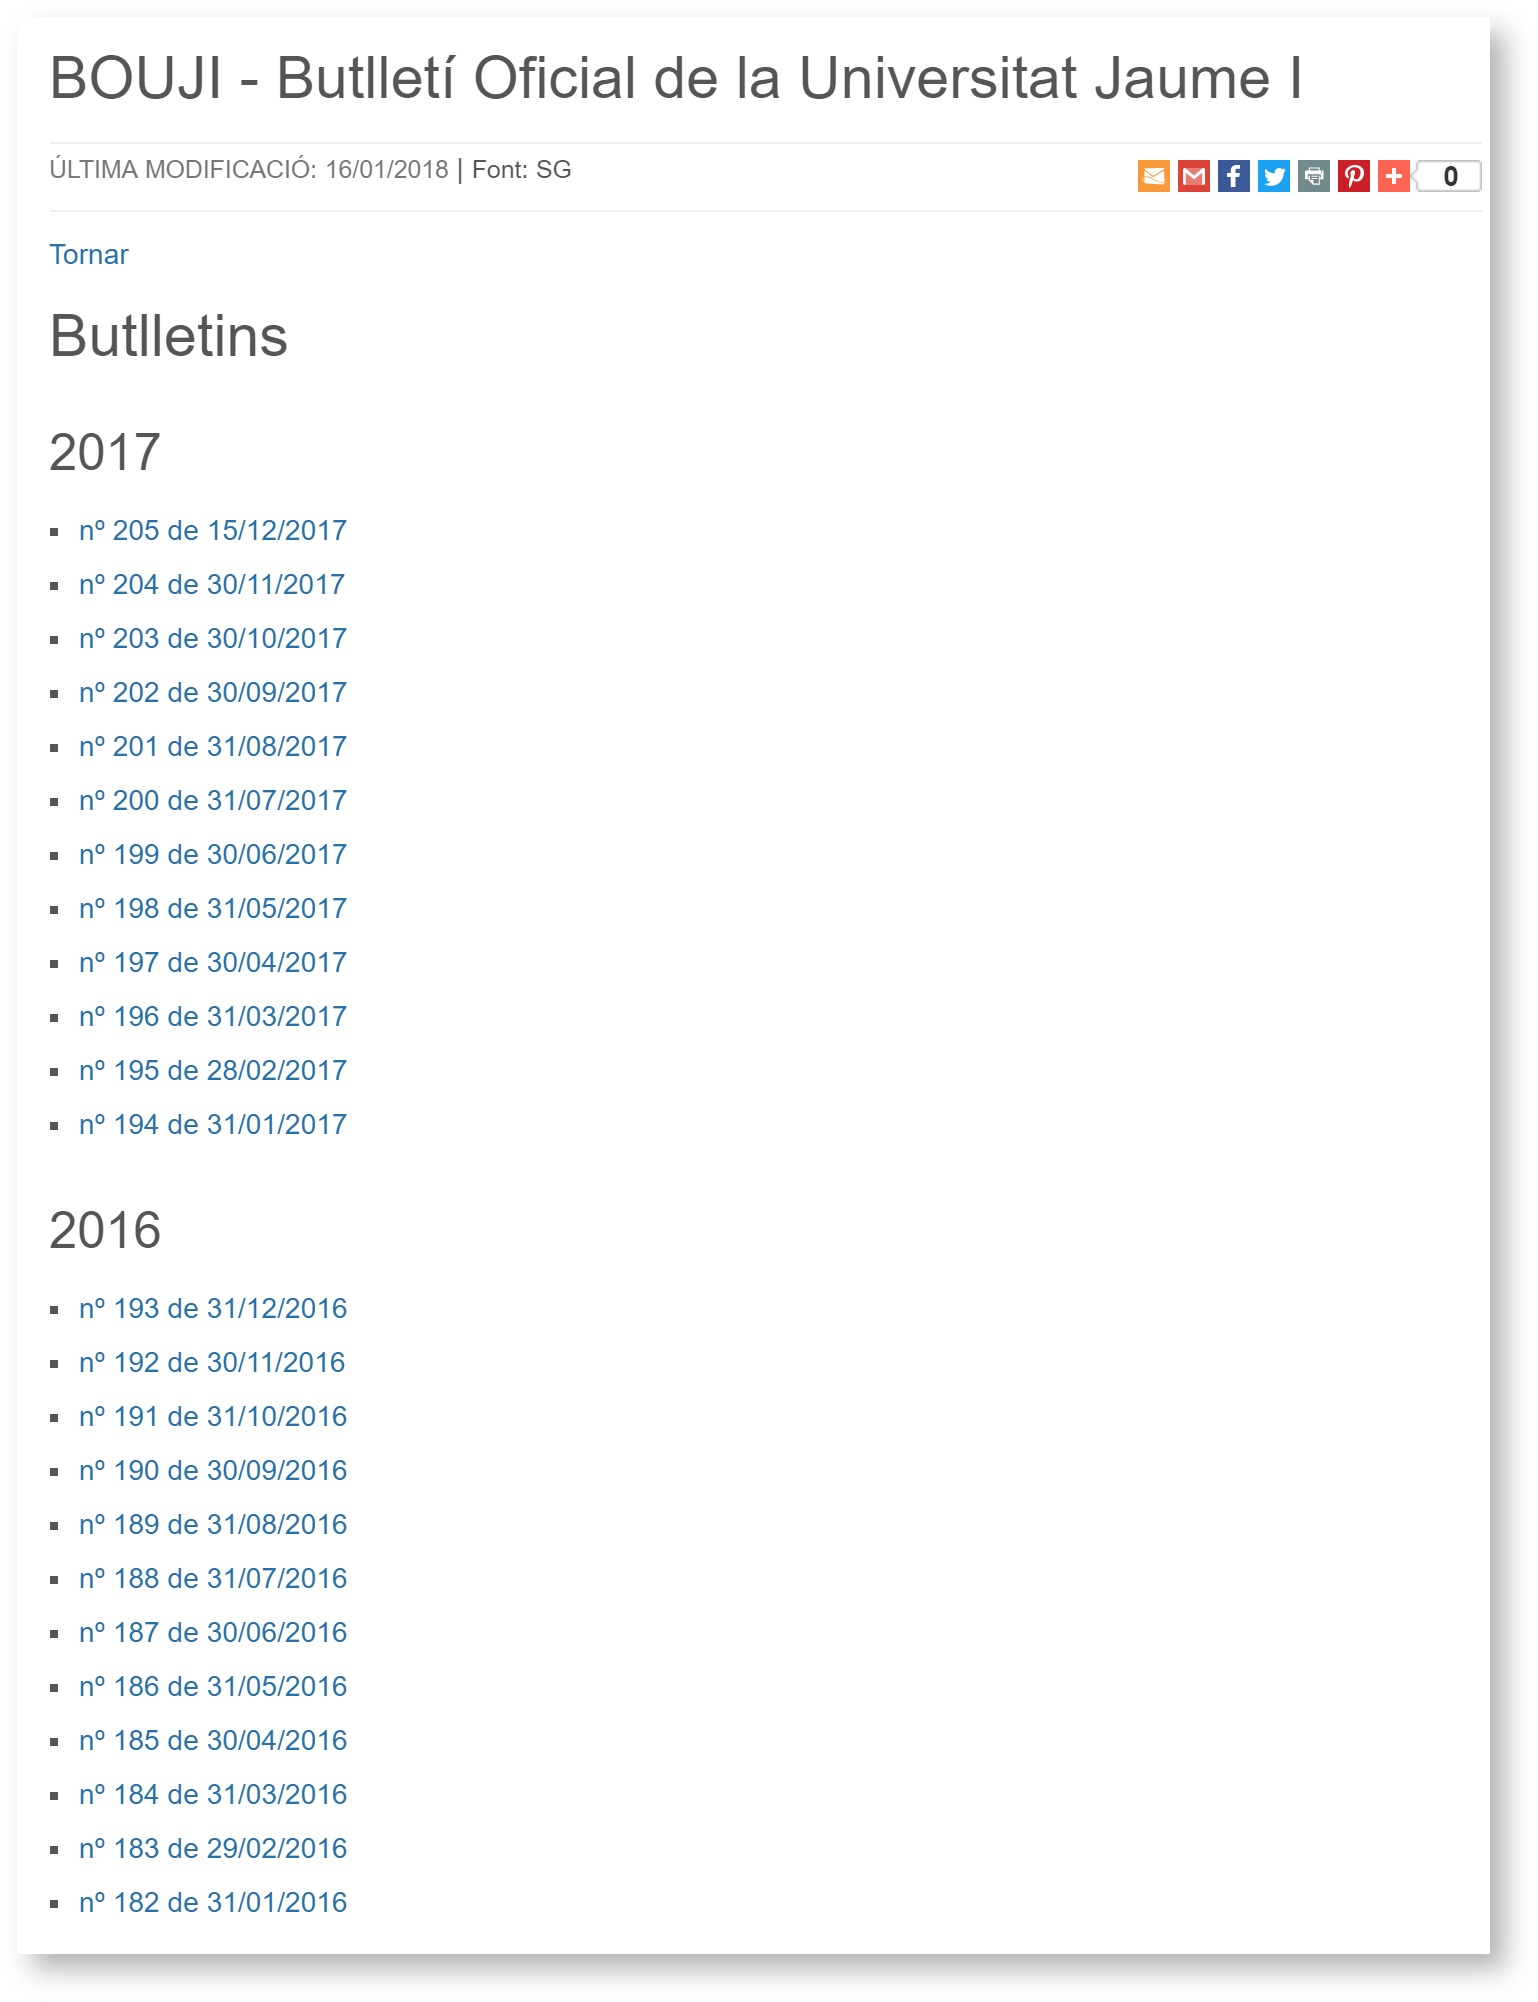 Visualització de tots els butlletins agrupats per anys